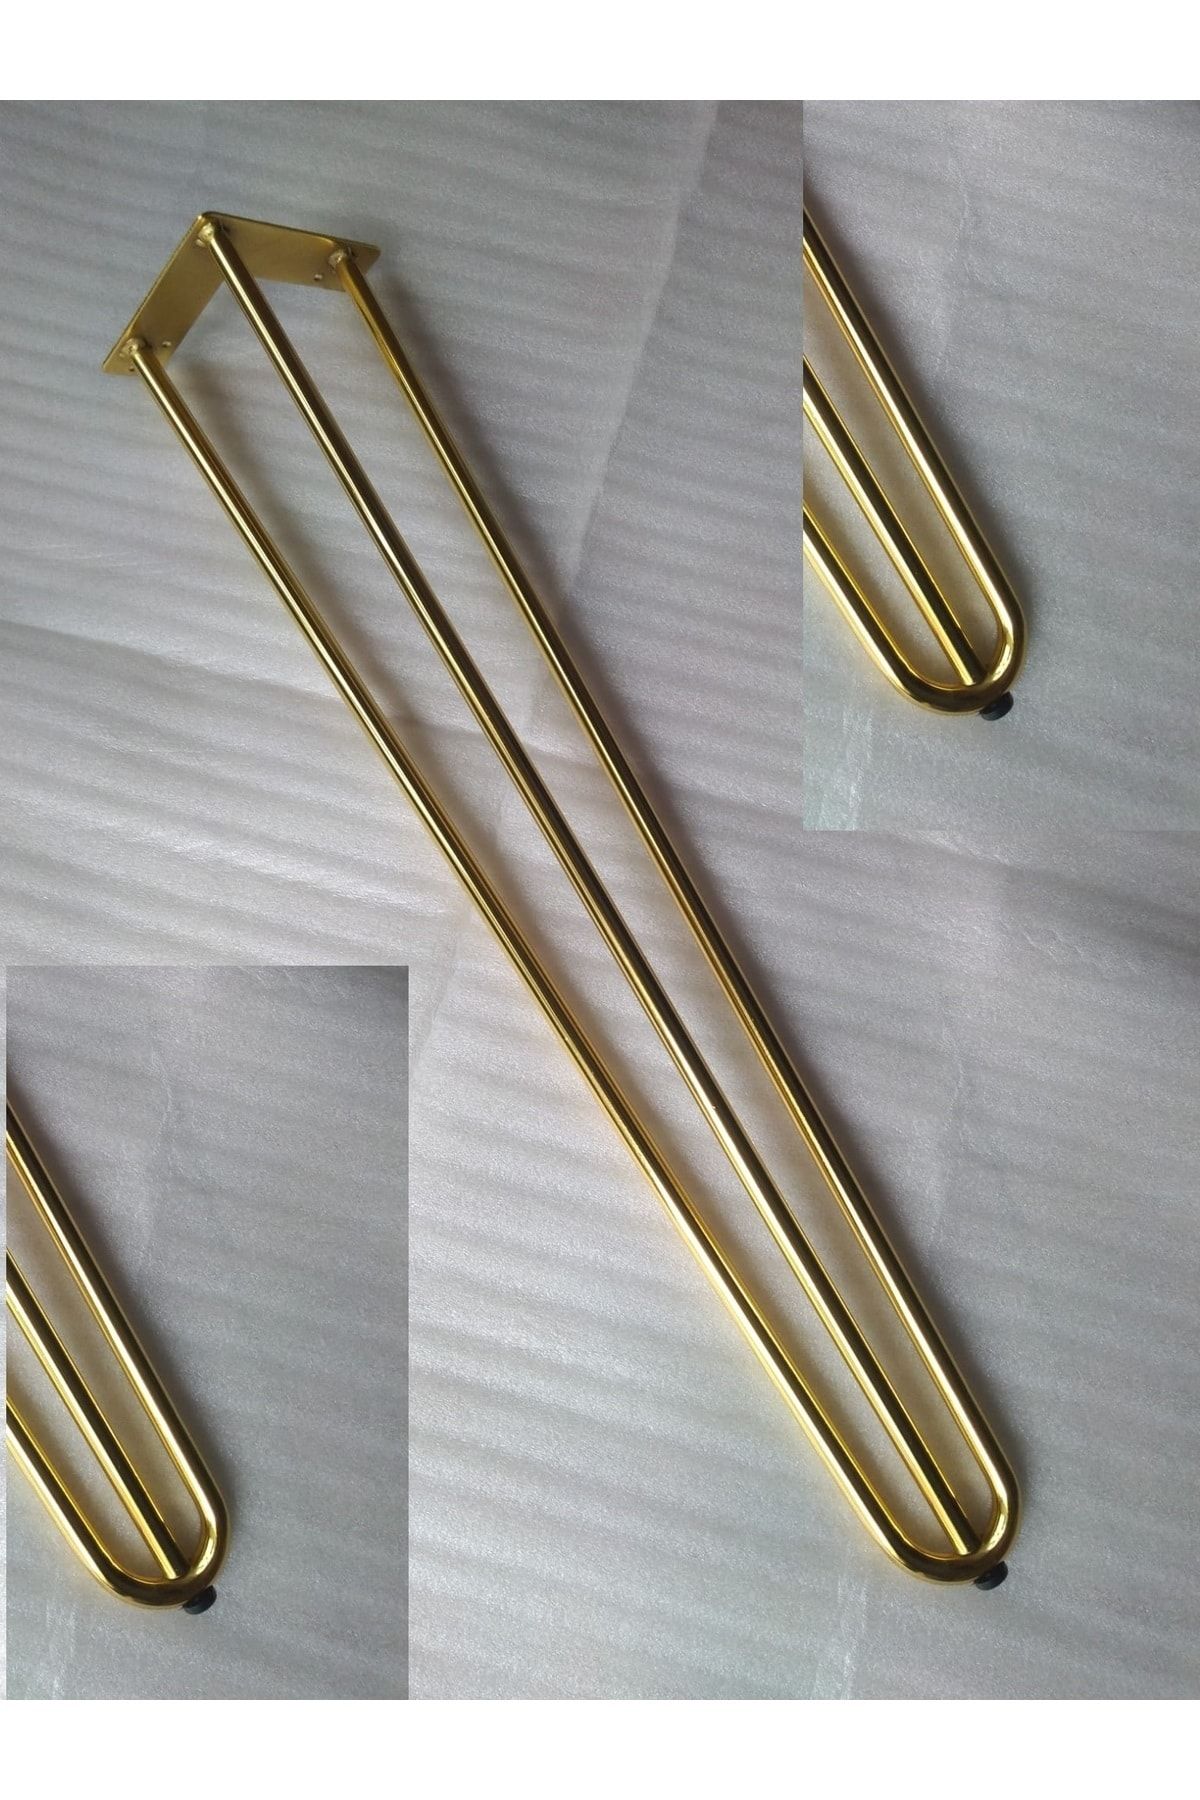 DEMONTEPARK 4 Adet-71.5cm Metal Firkete Ayak, Gold Renk Kaplama,masa Ayağı